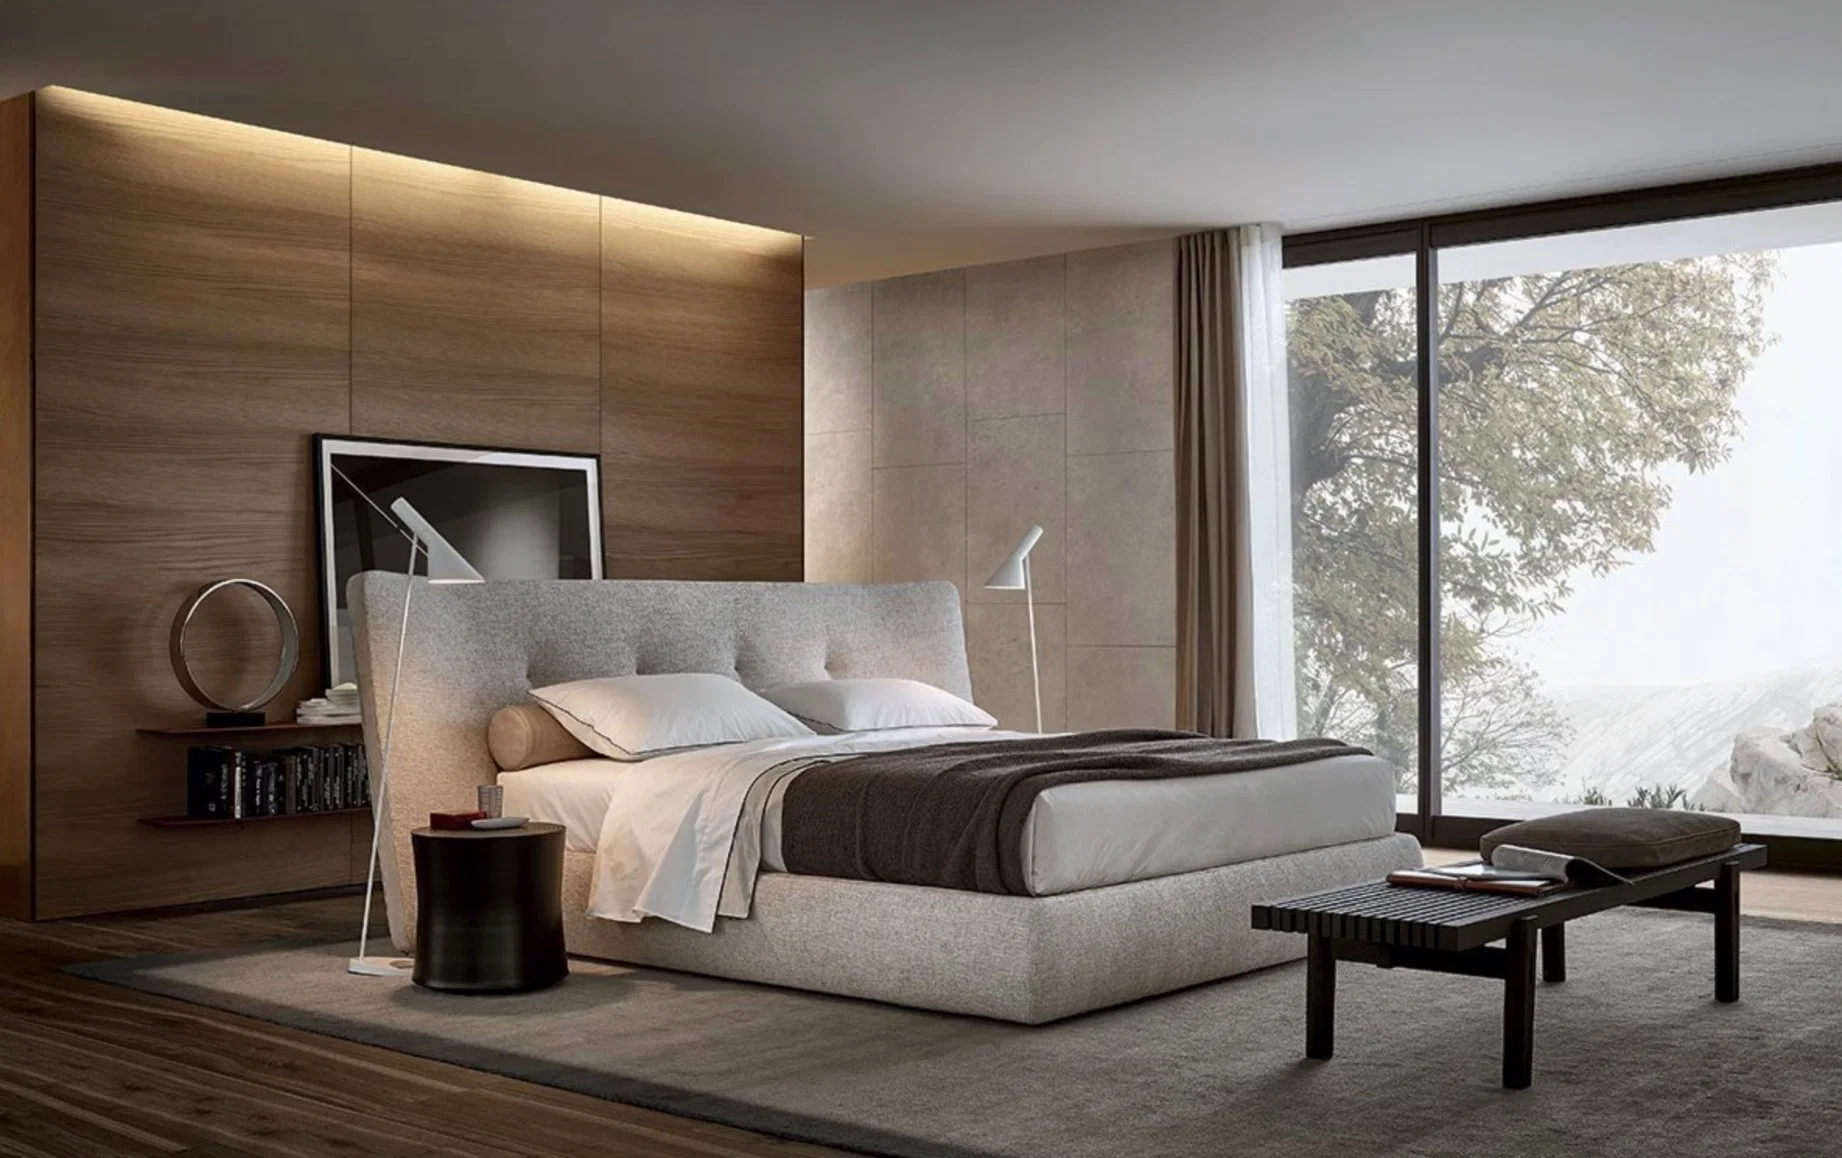 OEM/ODM европейской роскошью современной мебелью с одной спальней Letto выставке BETT Tufted мягкая кровать размера кинг деревянные кровати из натуральной кожи